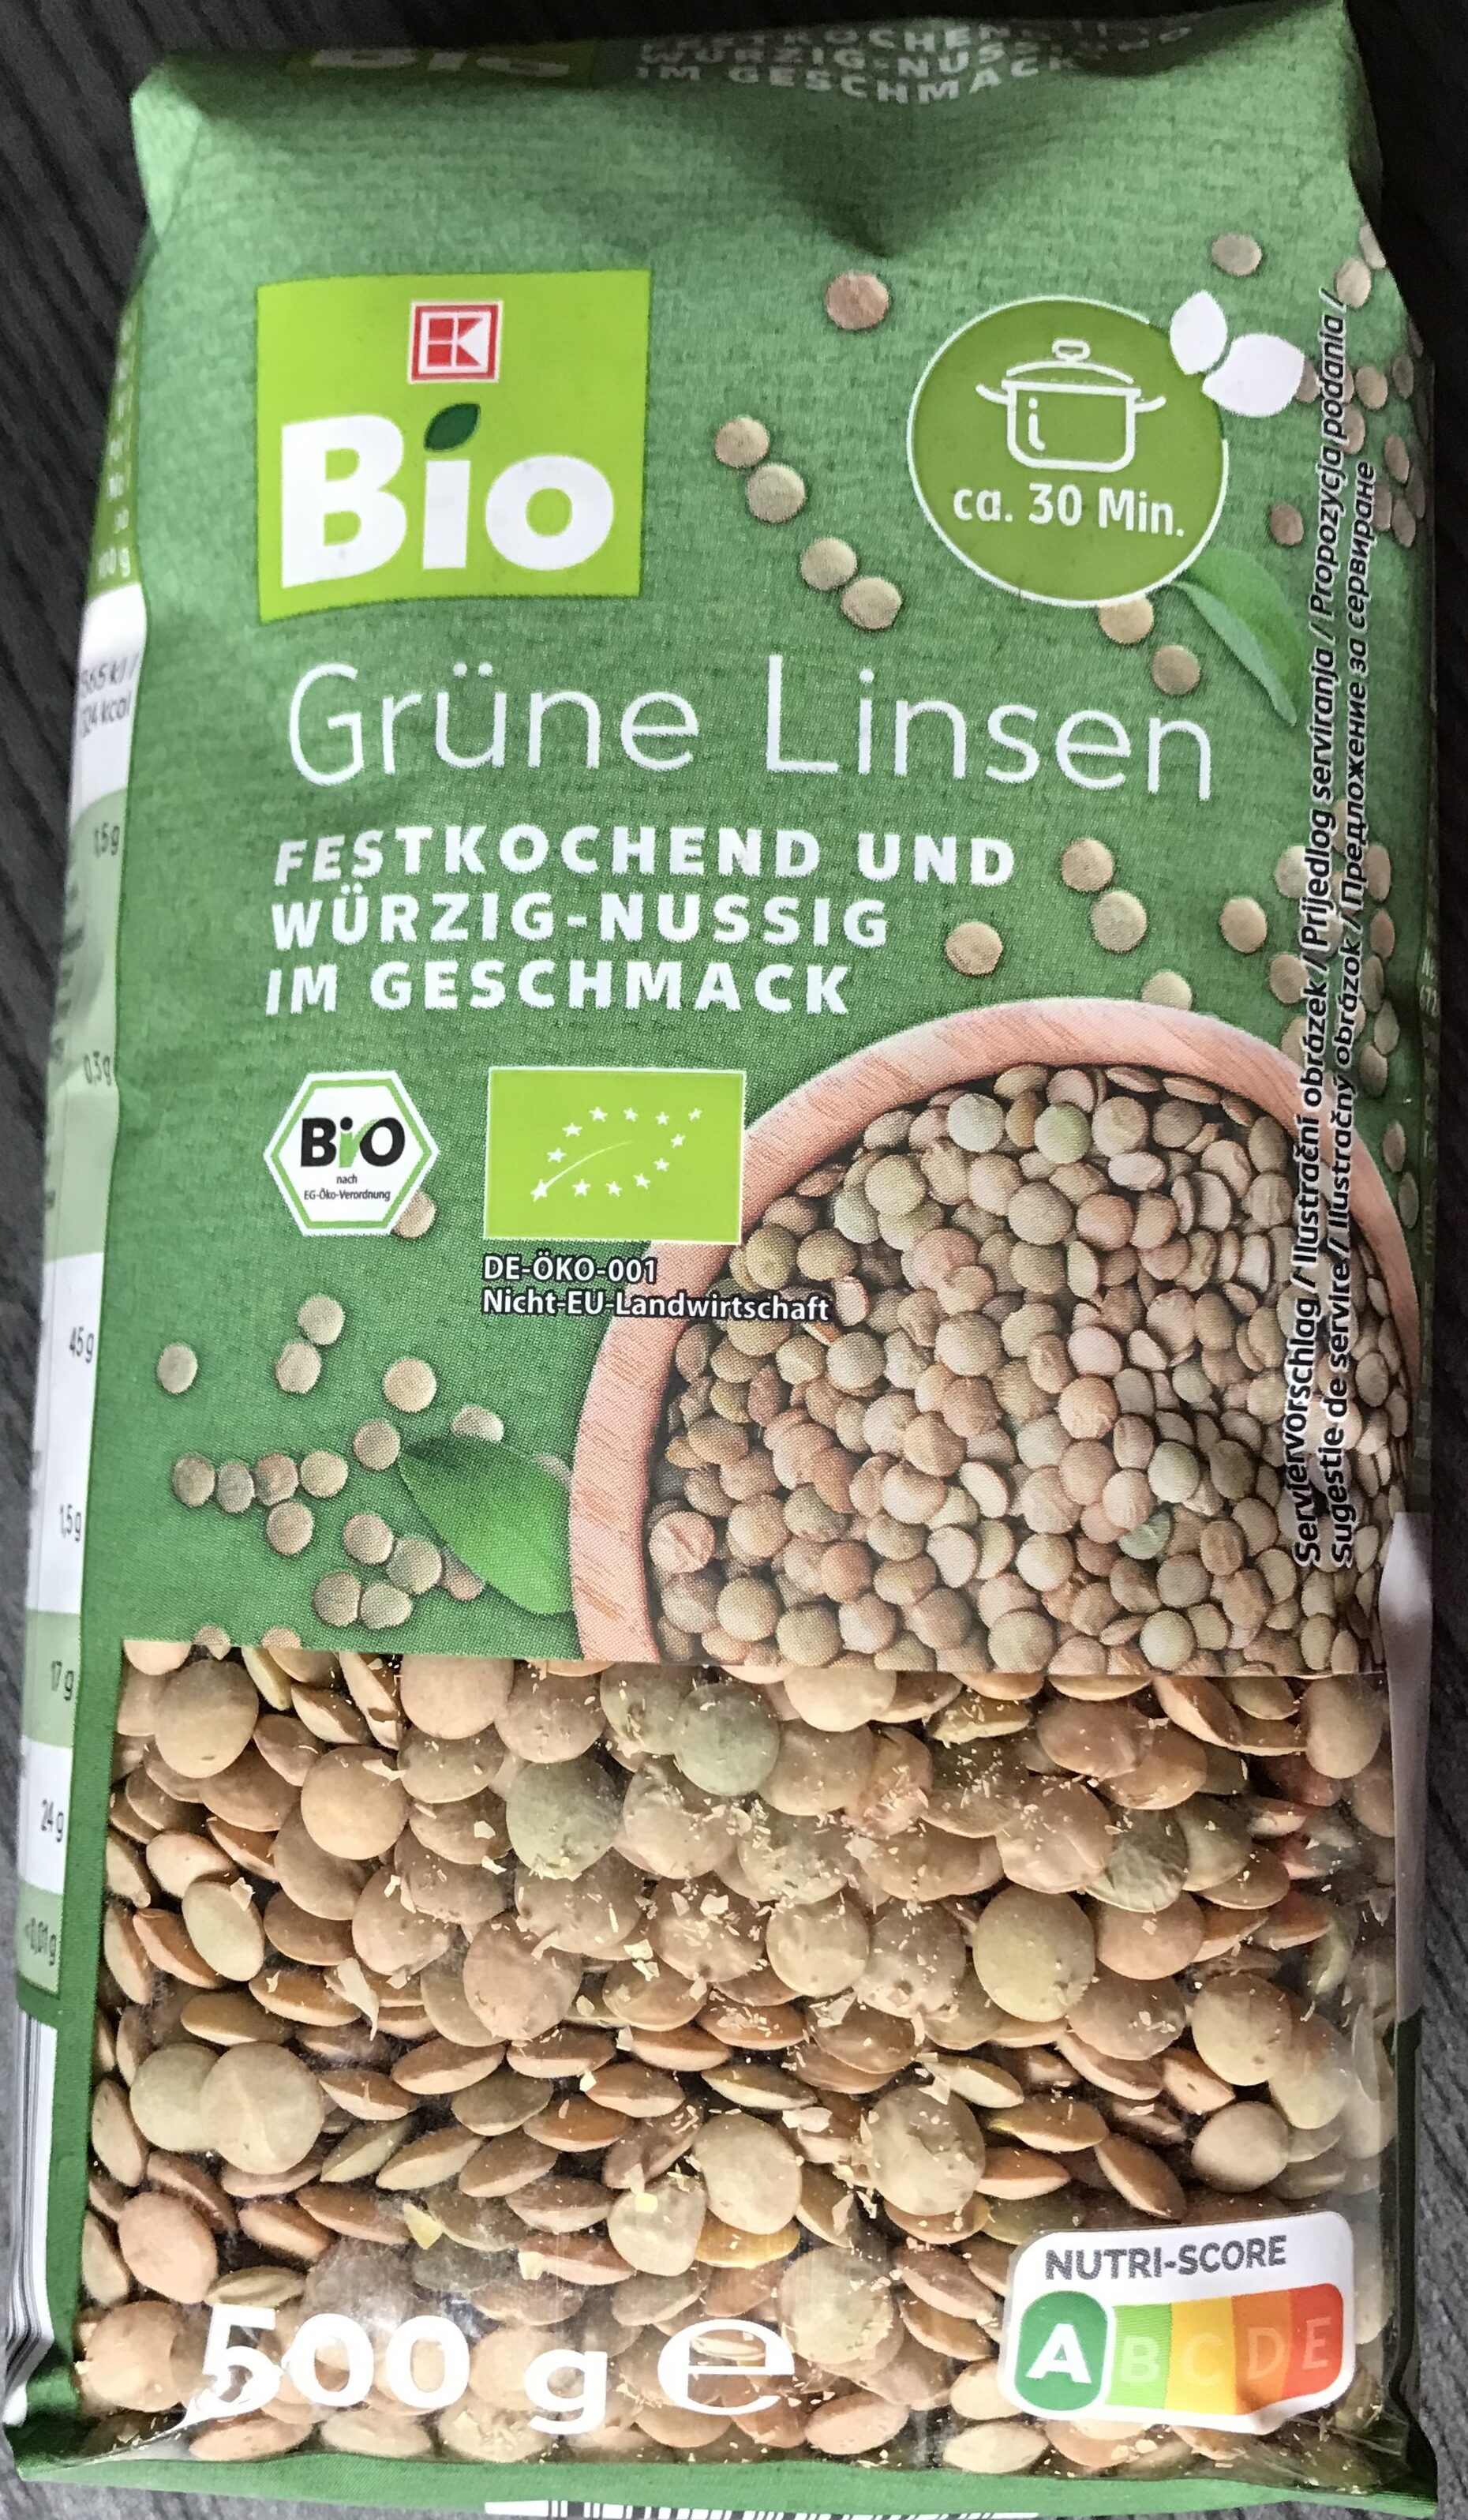 Grüne Linsen - Product - de